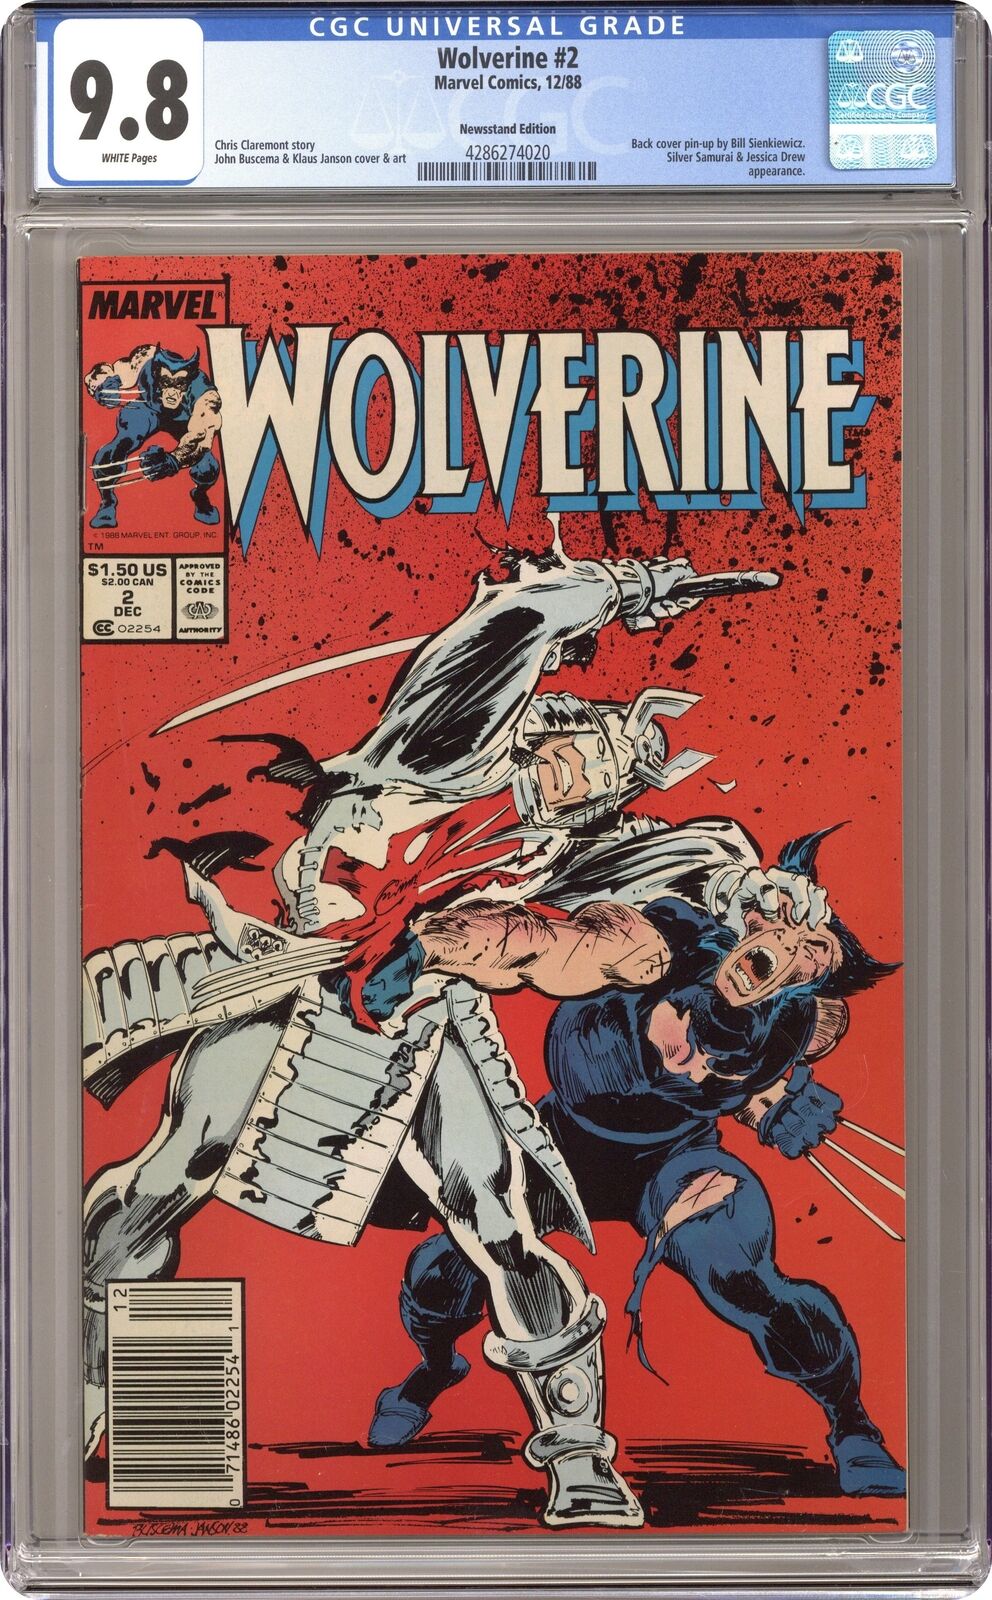 Wolverine #2 CGC 9.8 Newsstand 1988 4286274020